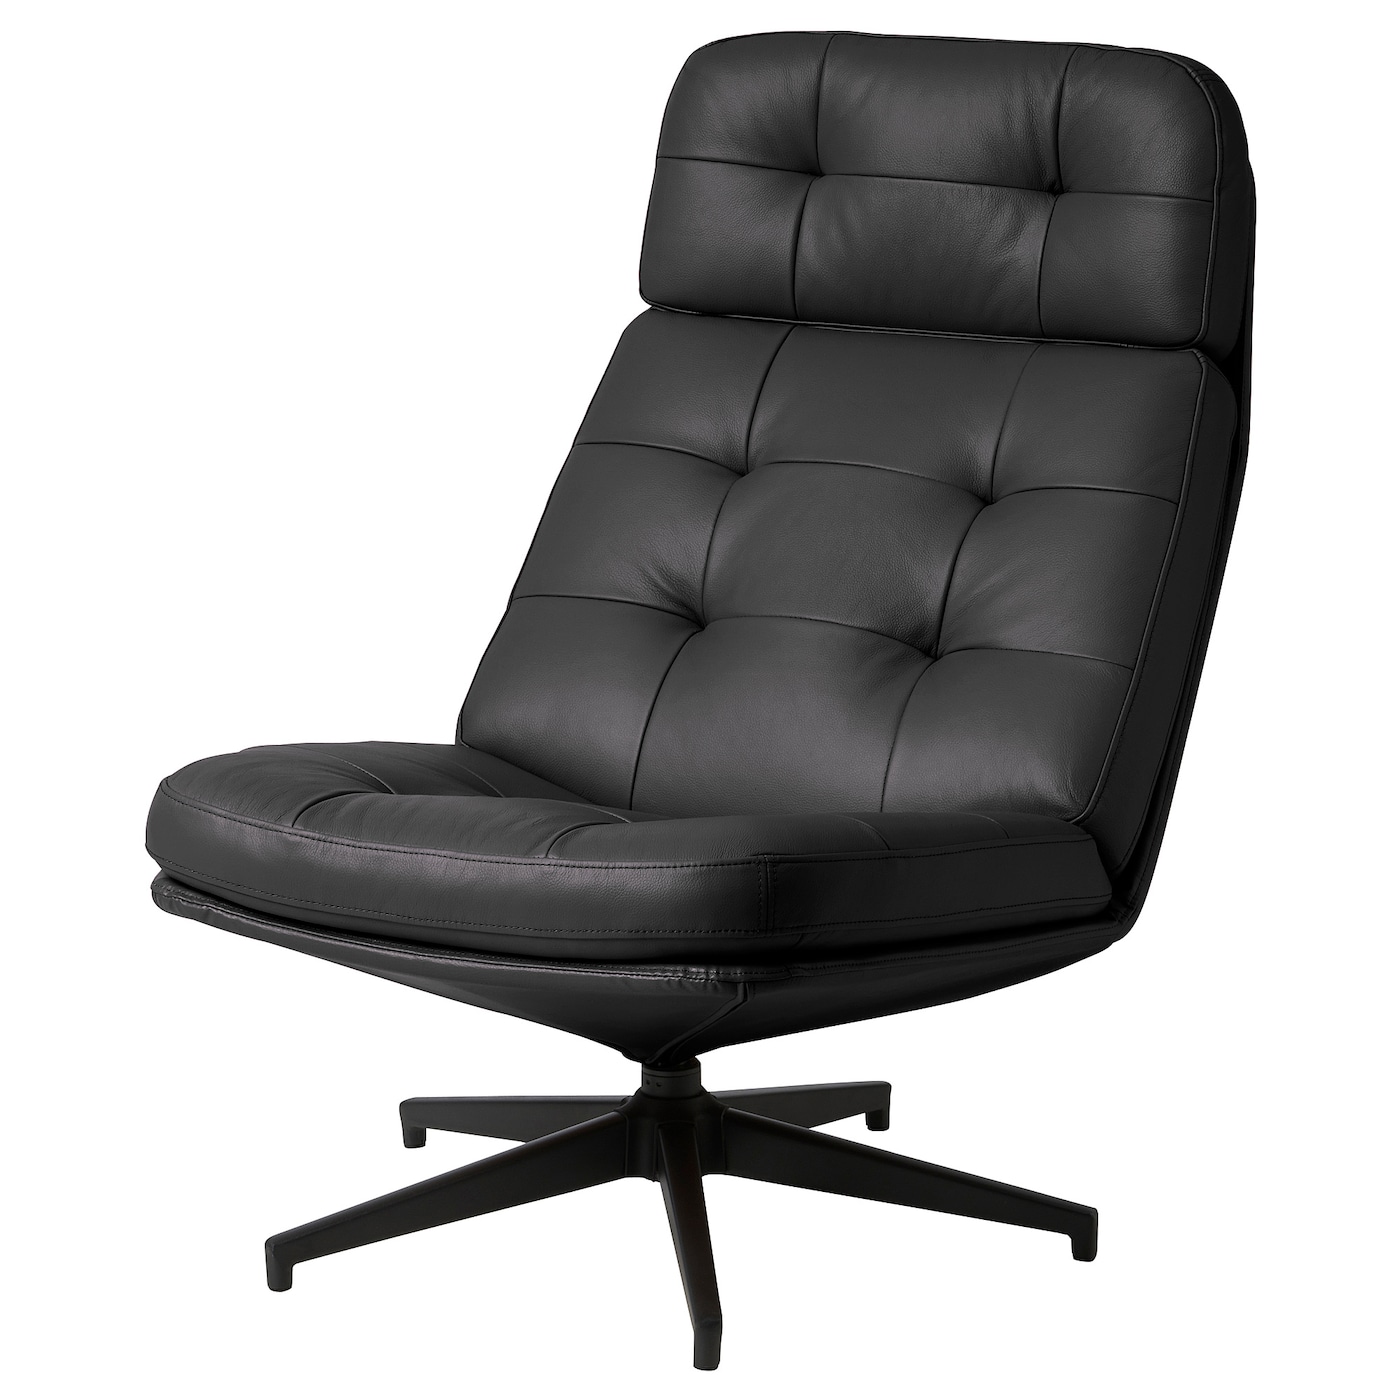 вращающееся кресло раскладное ХАВБЕРГ Вращающееся кресло, Гранн/Бомстад черный HAVBERG IKEA